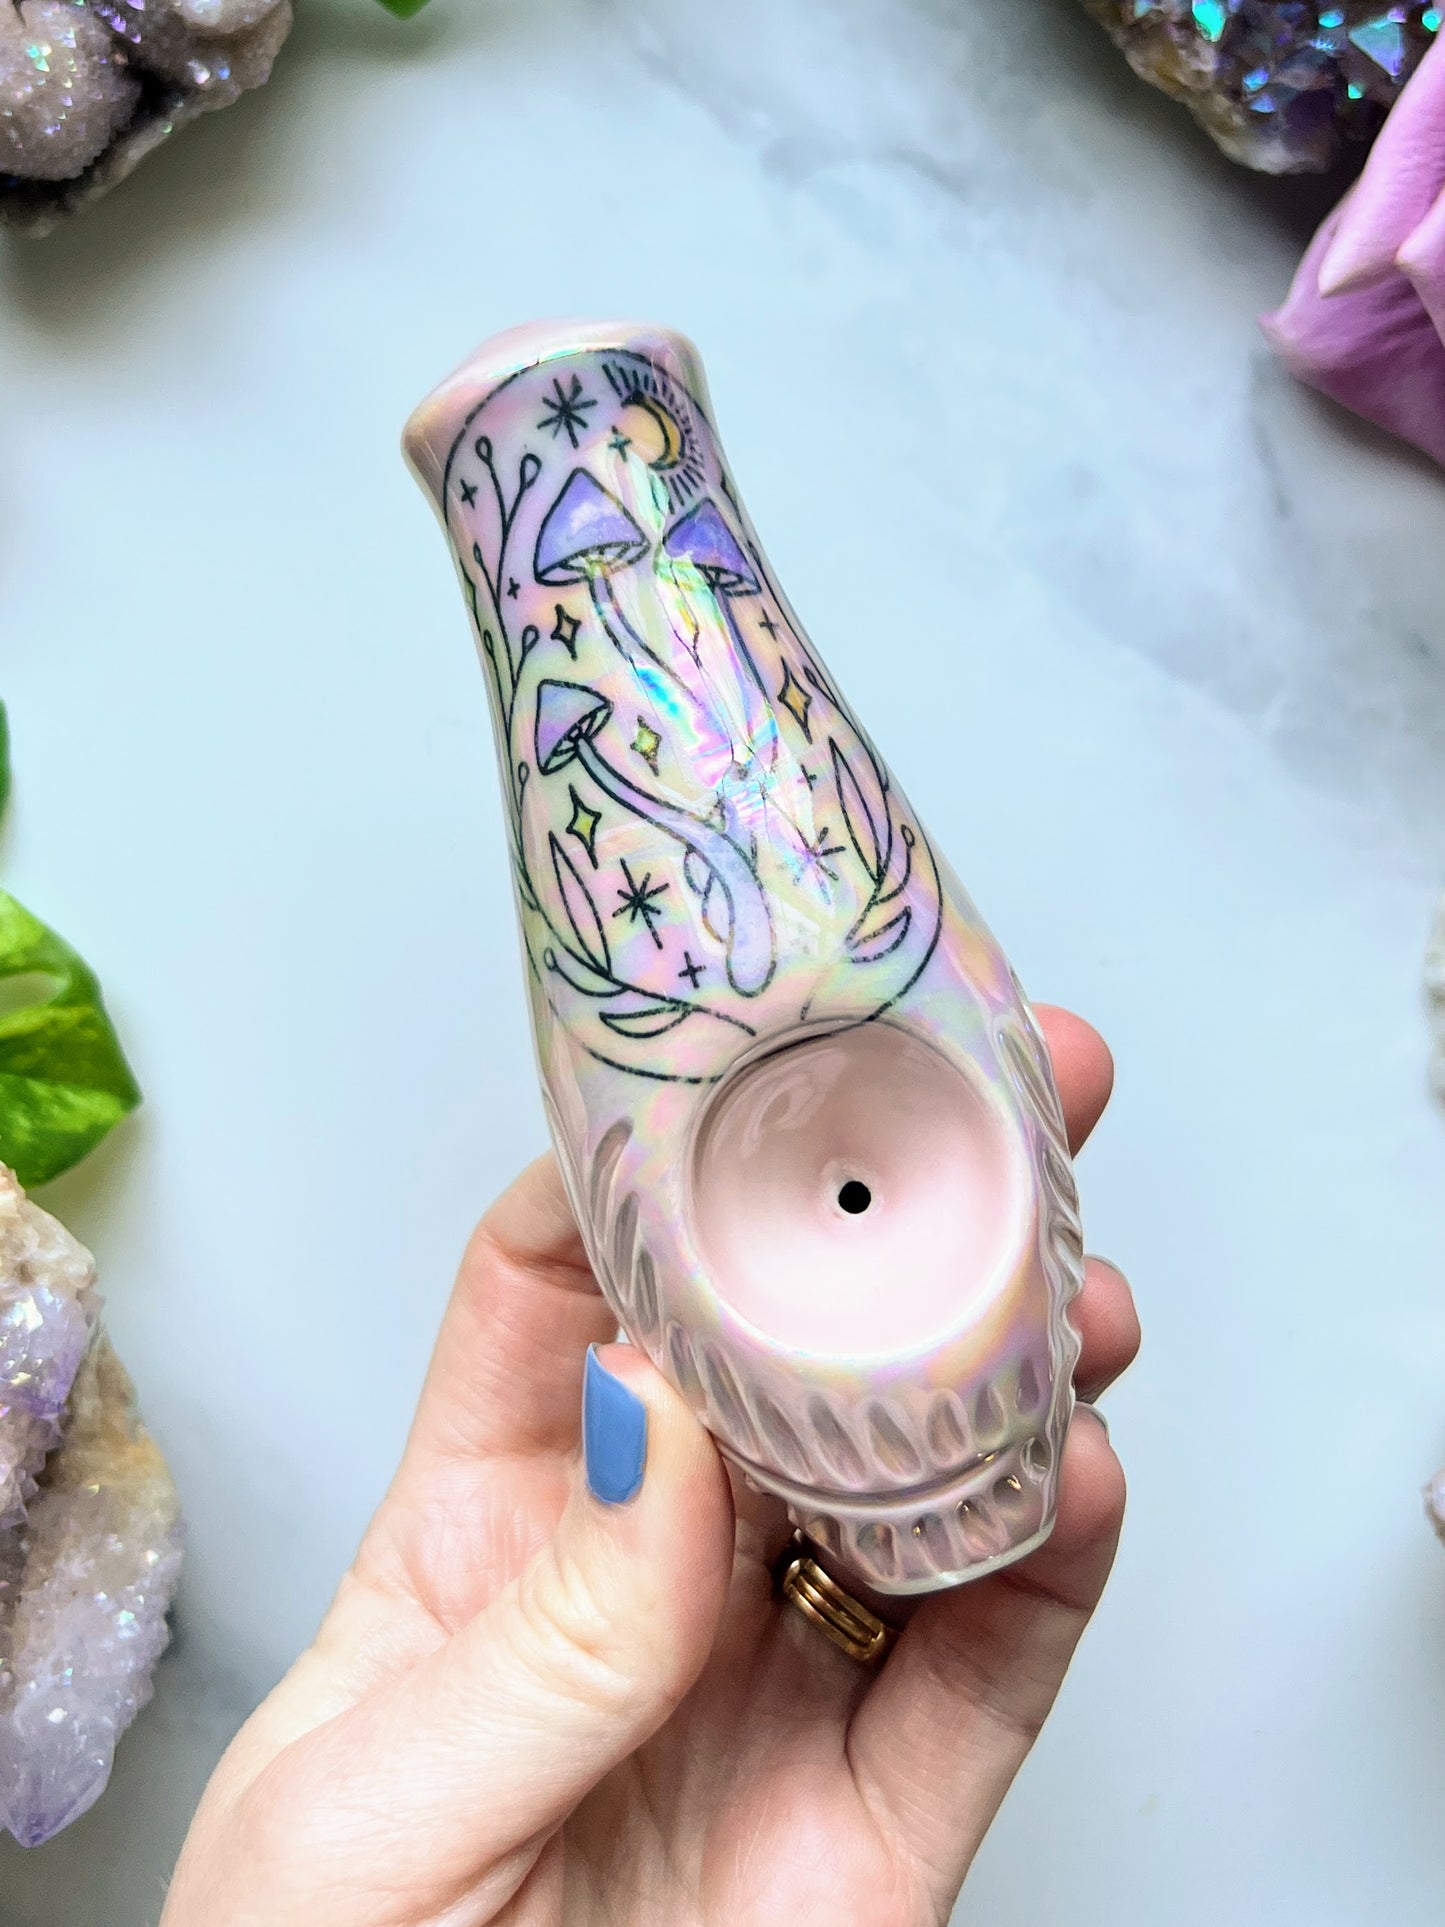 Dreamy Mushrom Pipe with Ceramic Porcelain Smoking Pipe